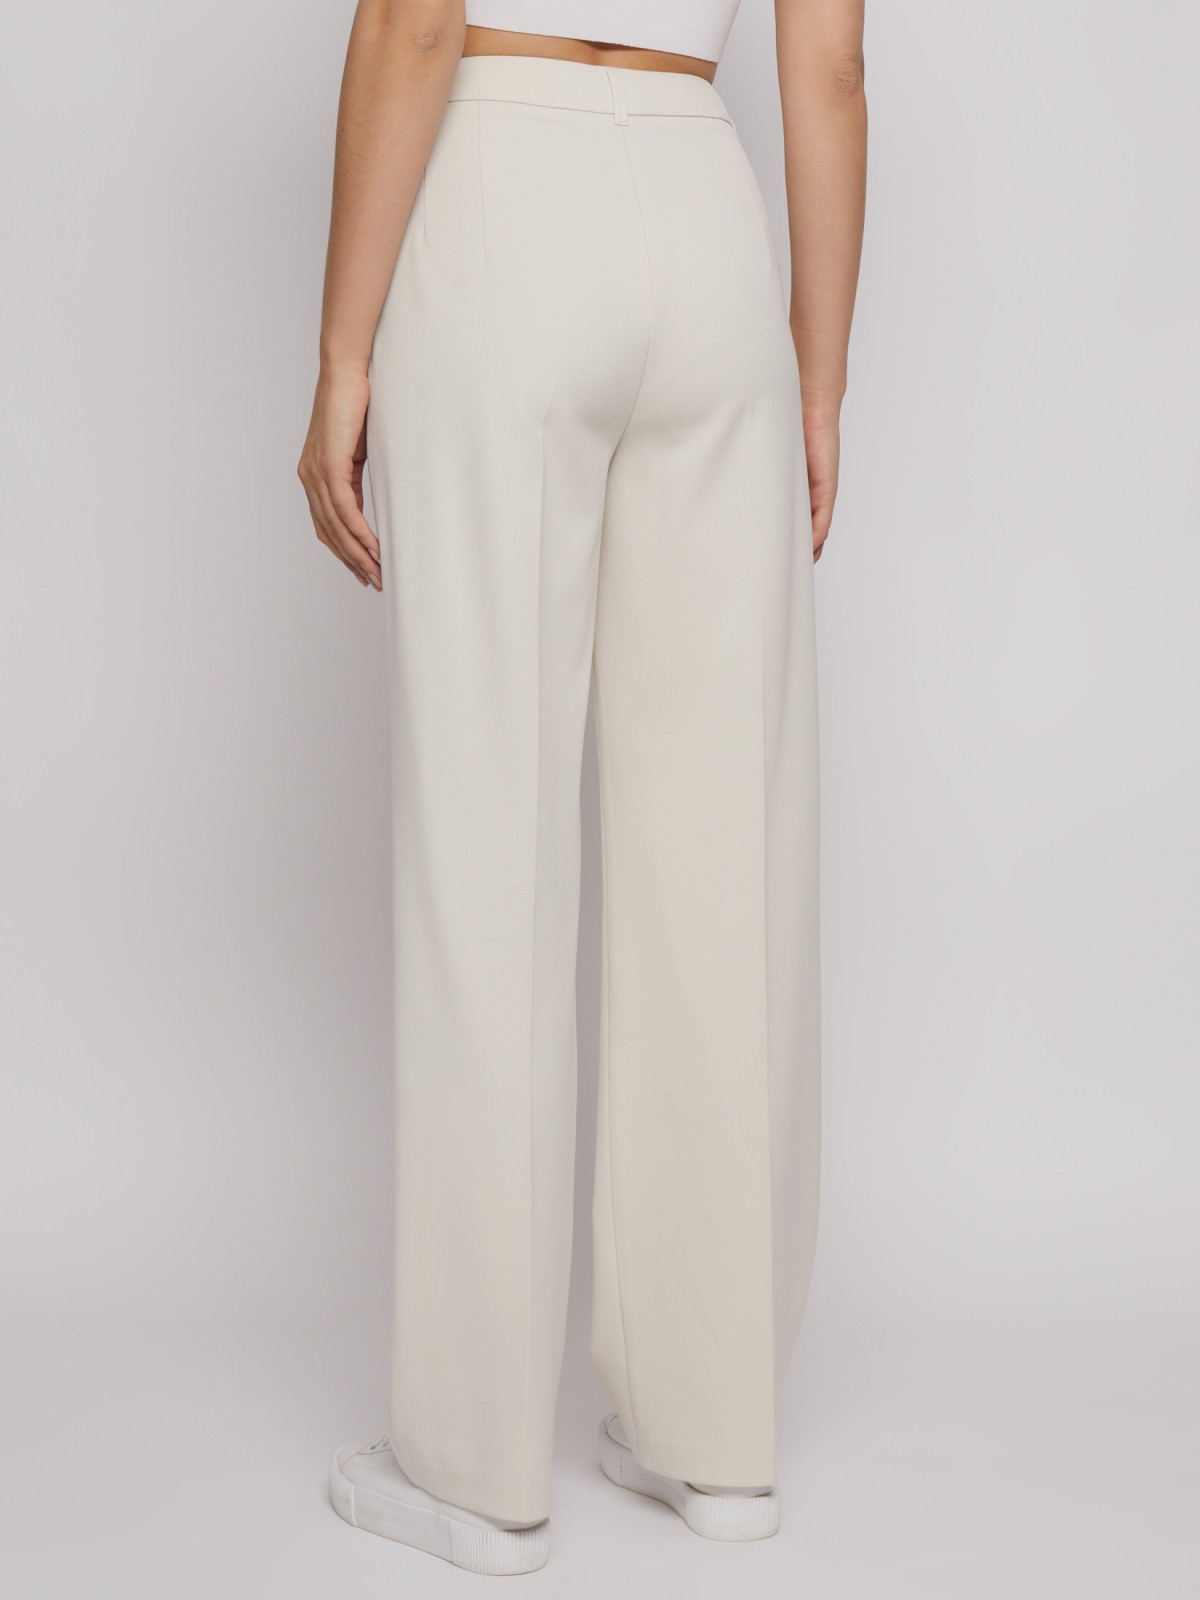 Прямые брюки со стрелками zolla 022217366131, цвет молоко, размер XS - фото 6